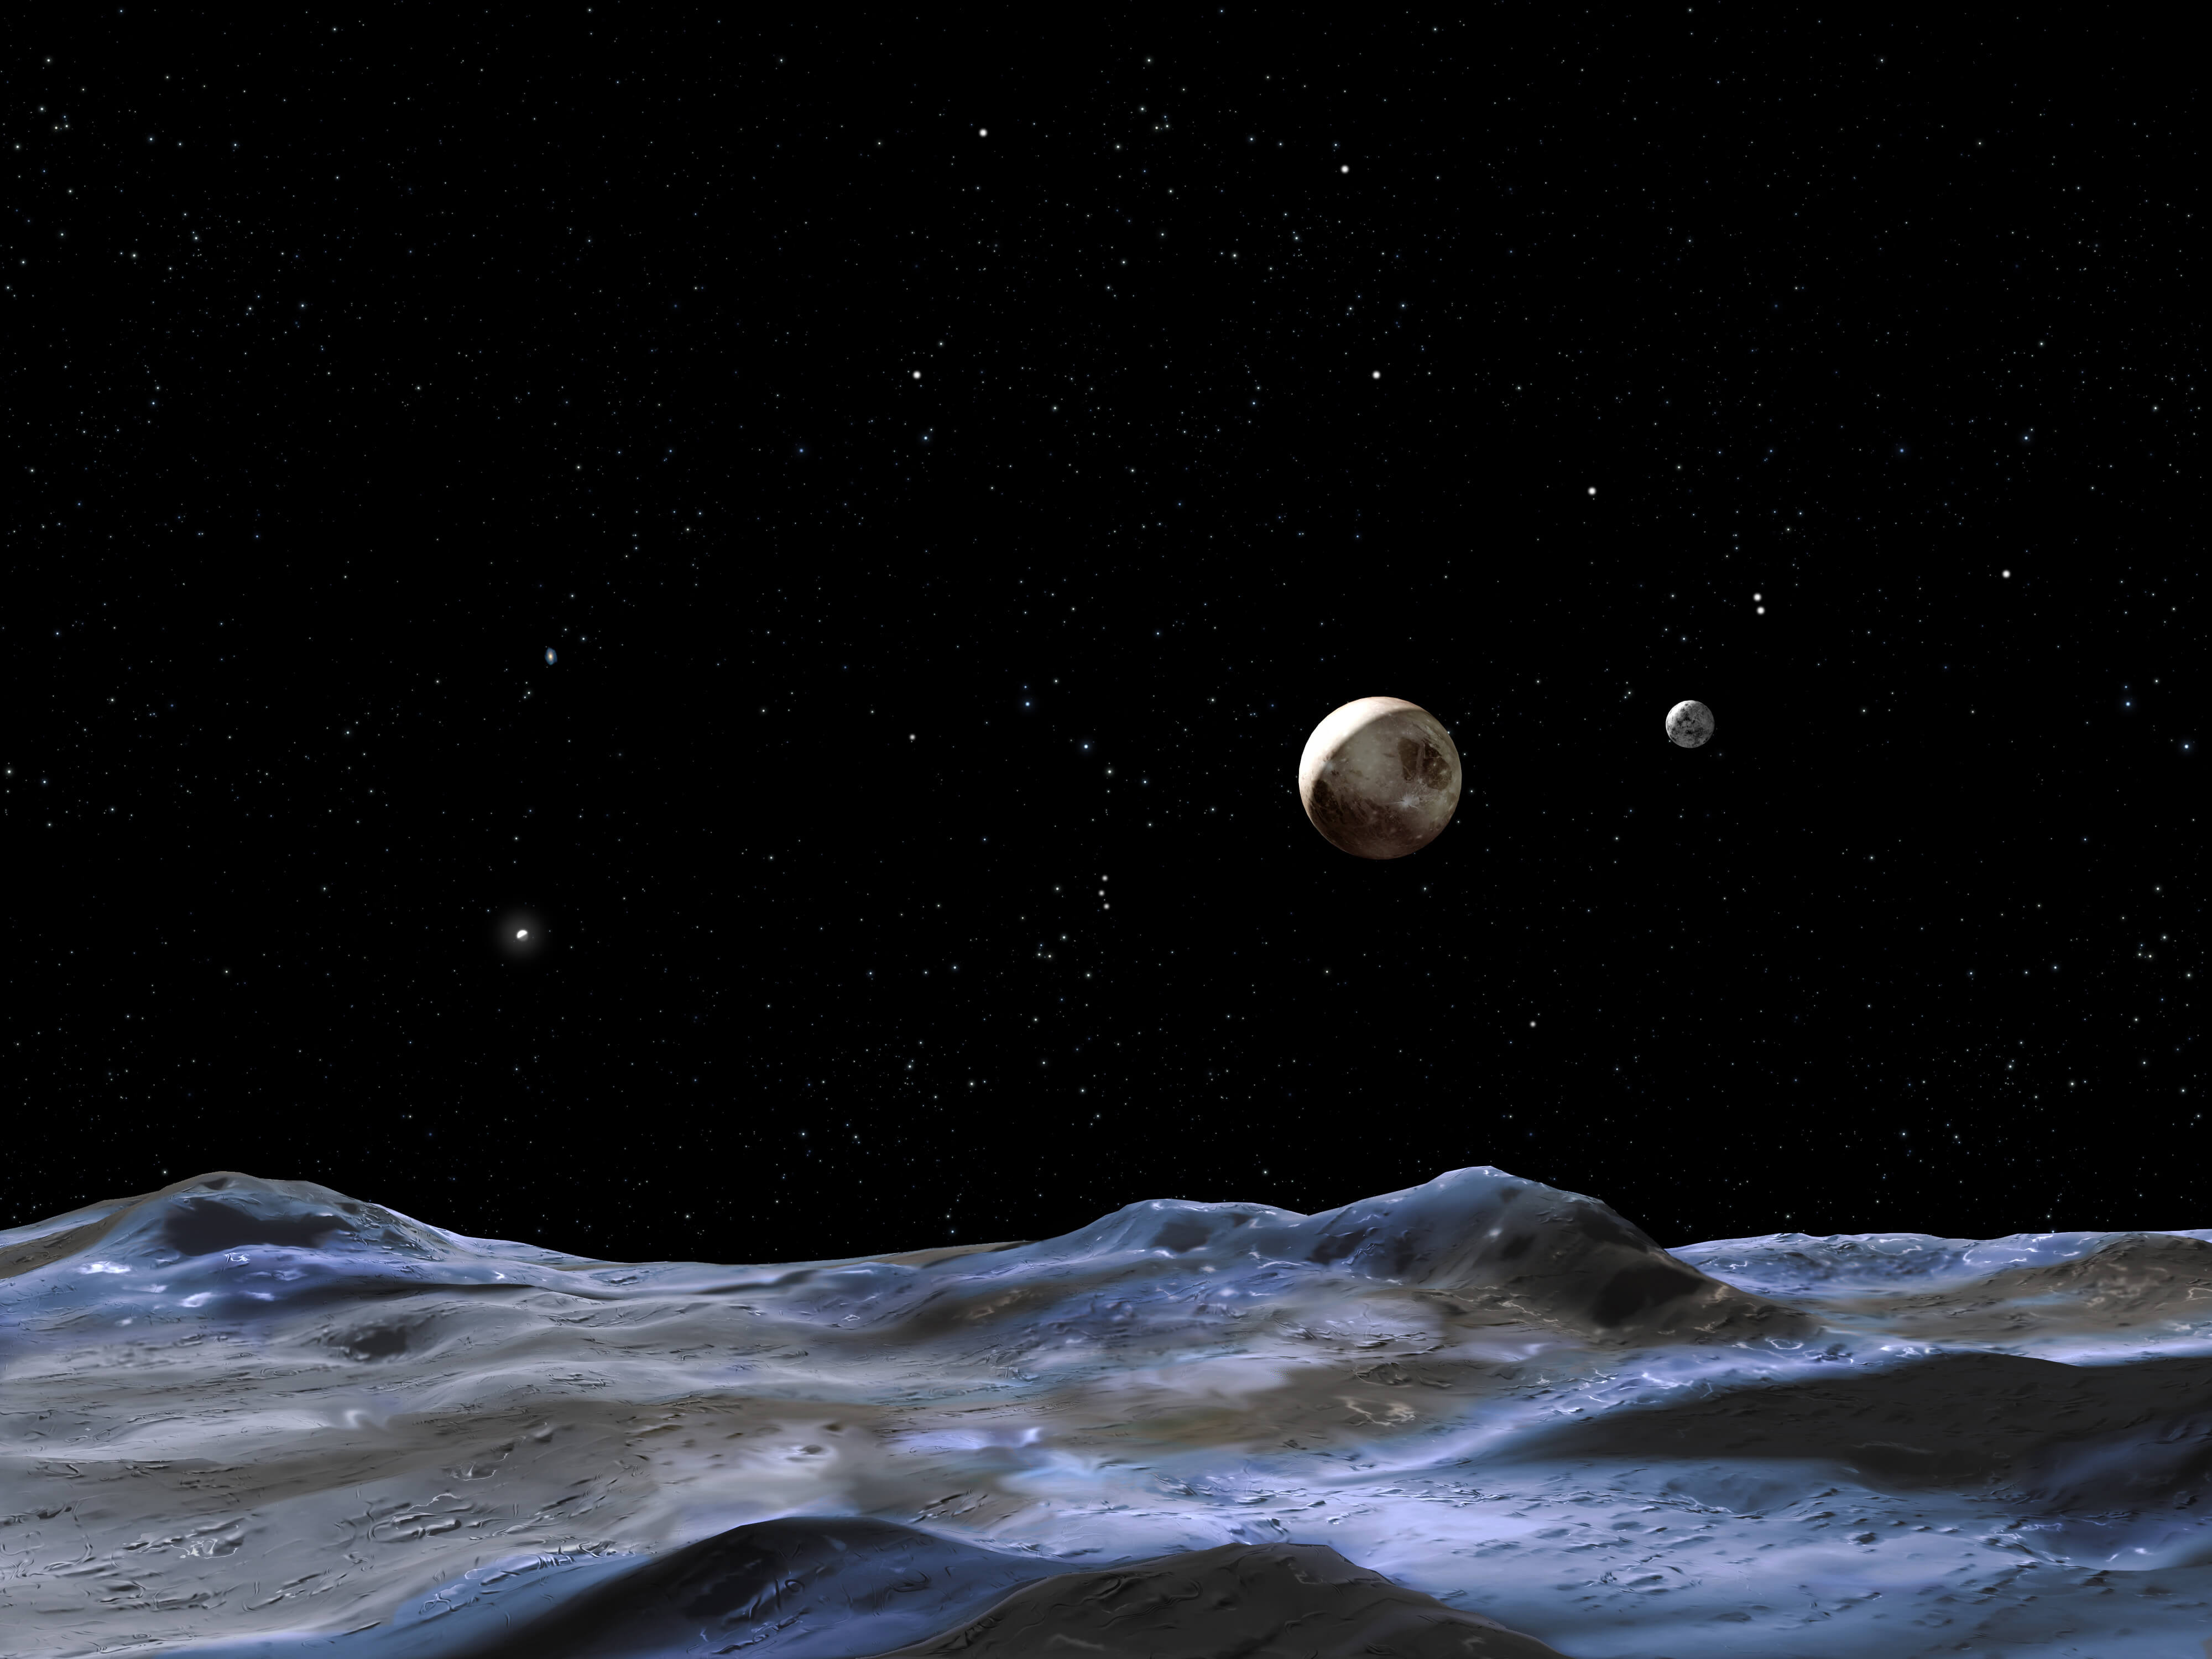 איור אמן מראה את פלוטו וכמה מירחיו כפי שהם נראים מפני השטח של אחד הירחים. פלוטו הוא הדיסקה הגדולה במרכז. כארון הוא הדיסקה הקטנה ביותר מימין. איור: NASA, ESA and G. Bacon (STScI)